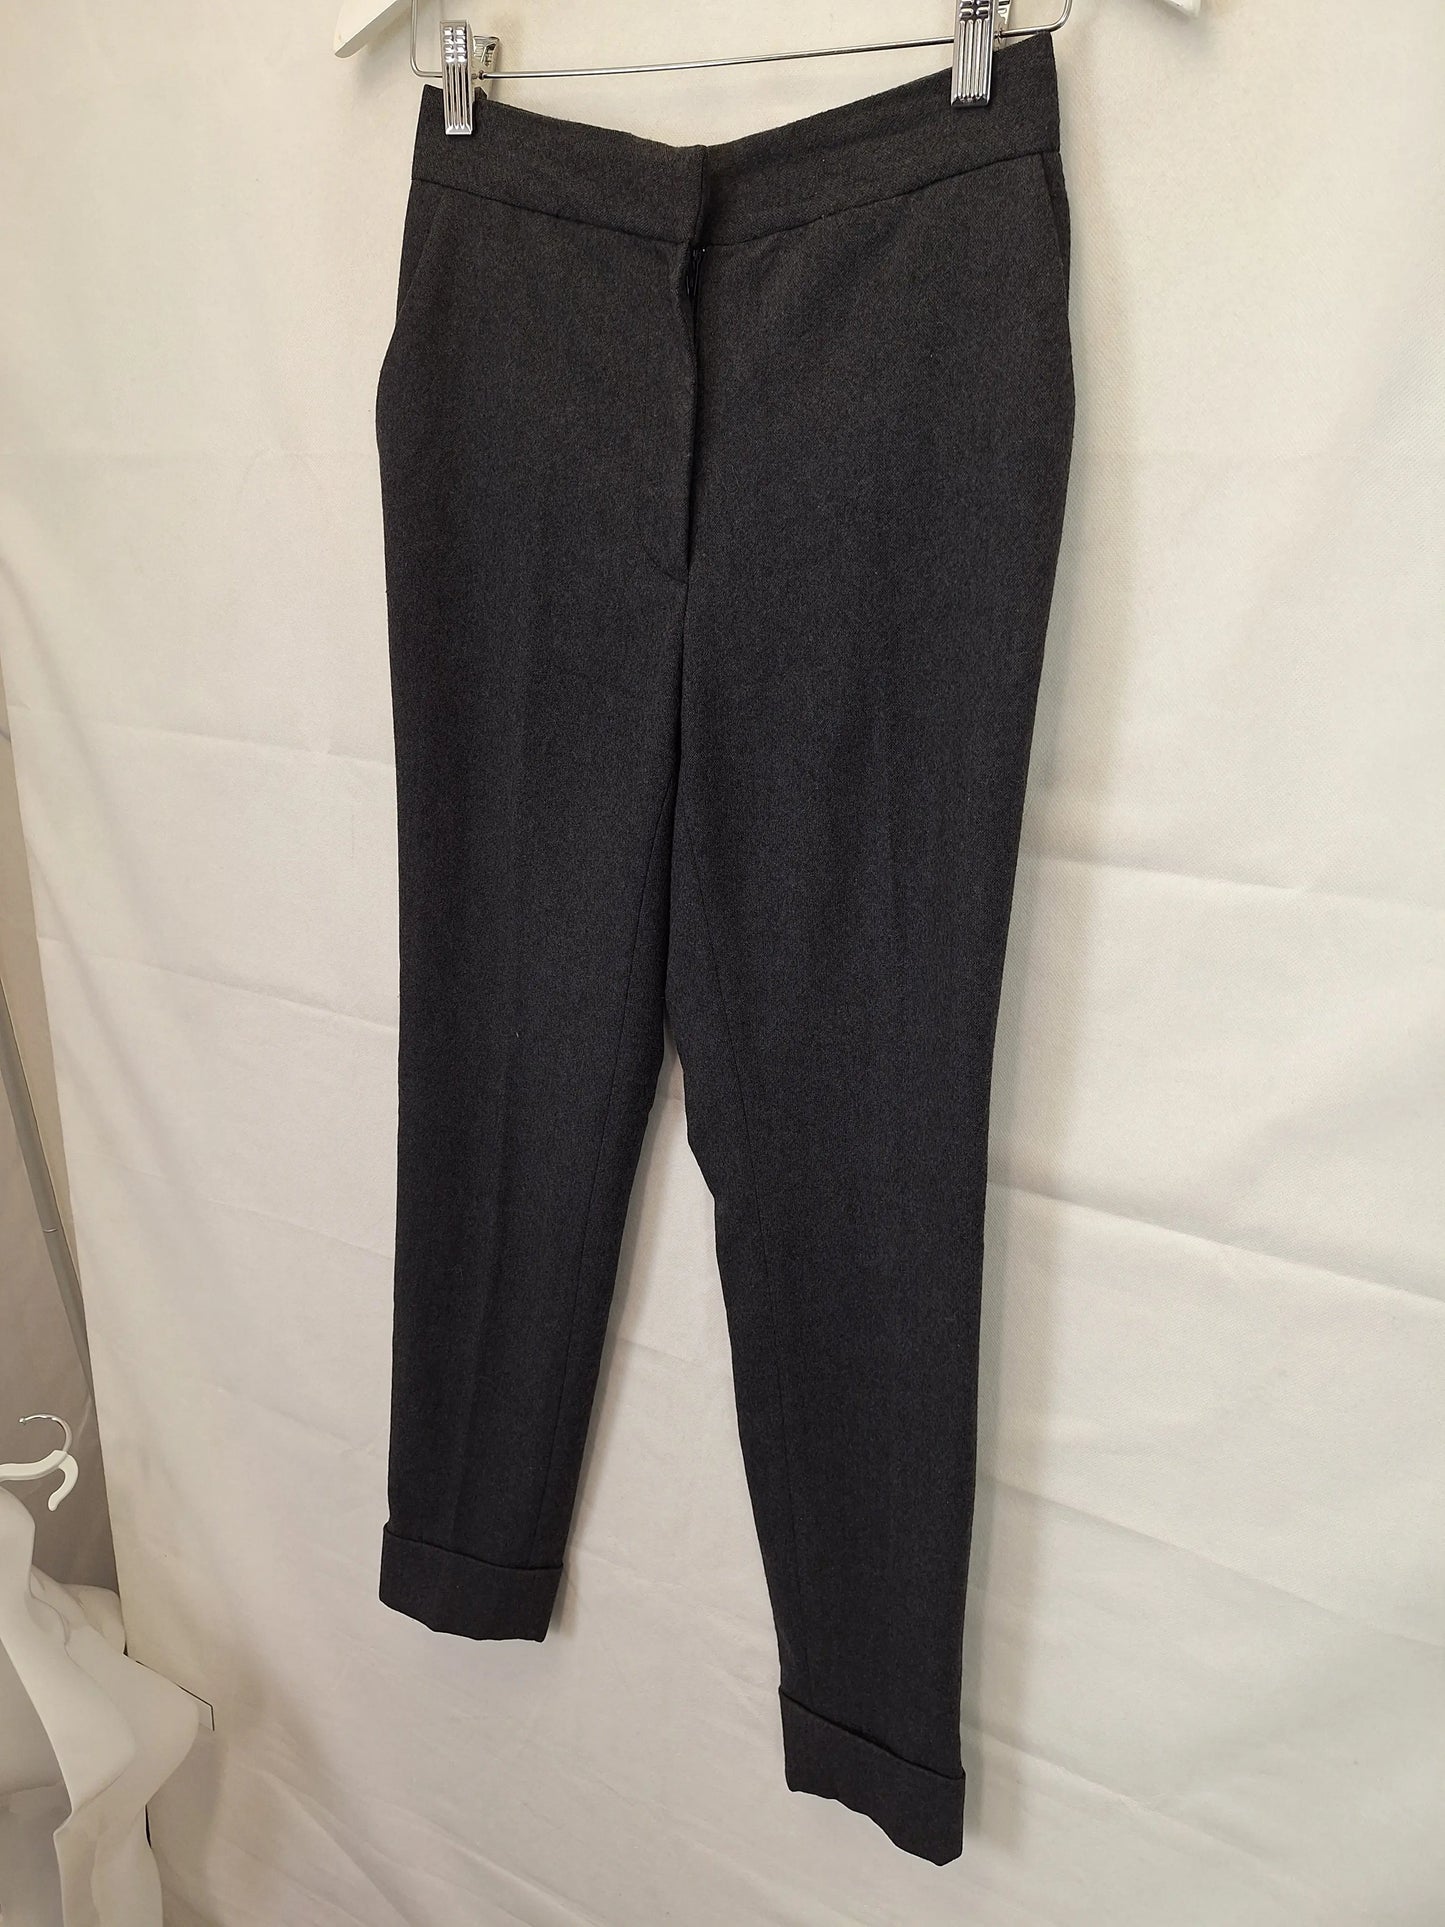 Gorman Wool Blend Work Pants Size 6 – SwapUp